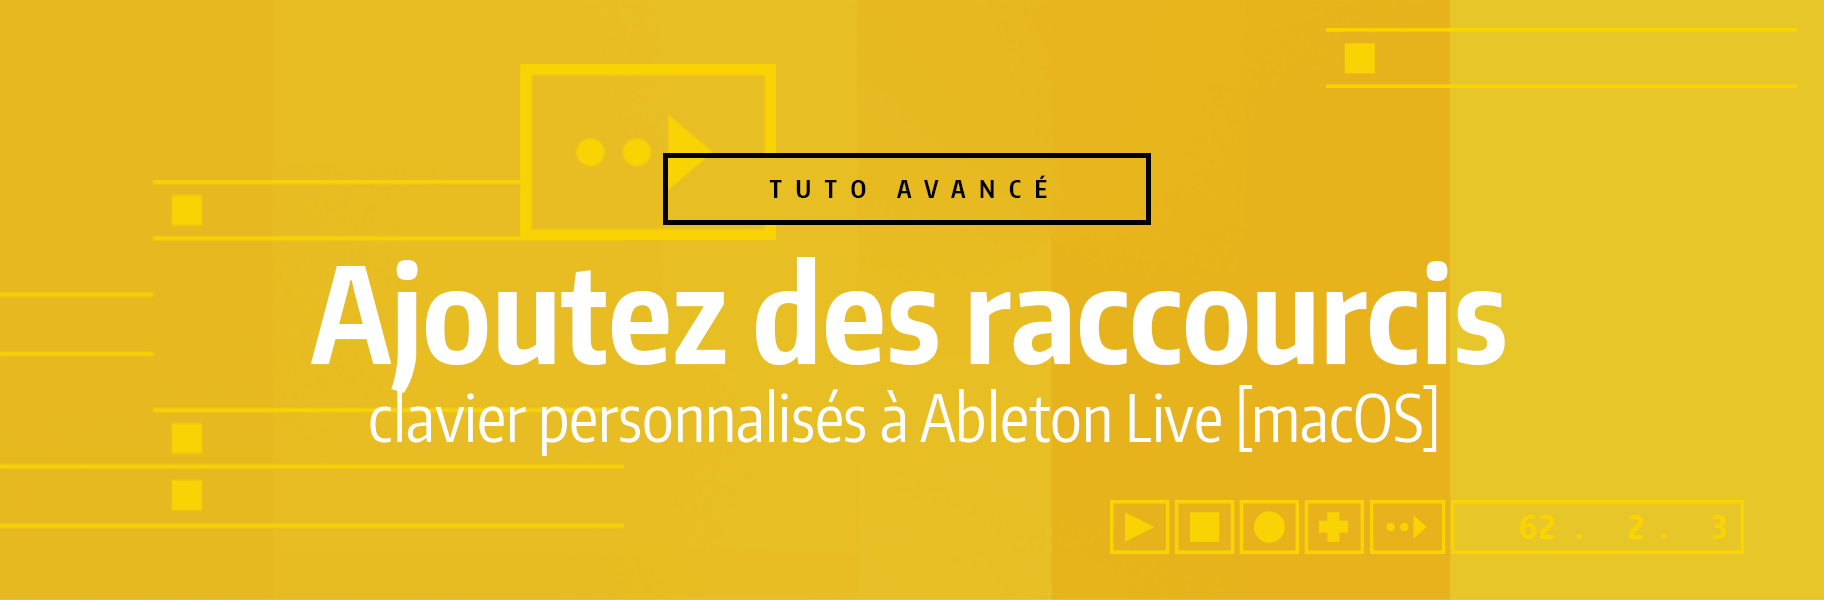 Tutoriel Ableton Live - Ajouter des raccourcis clavier personnalisés à Ableton Live